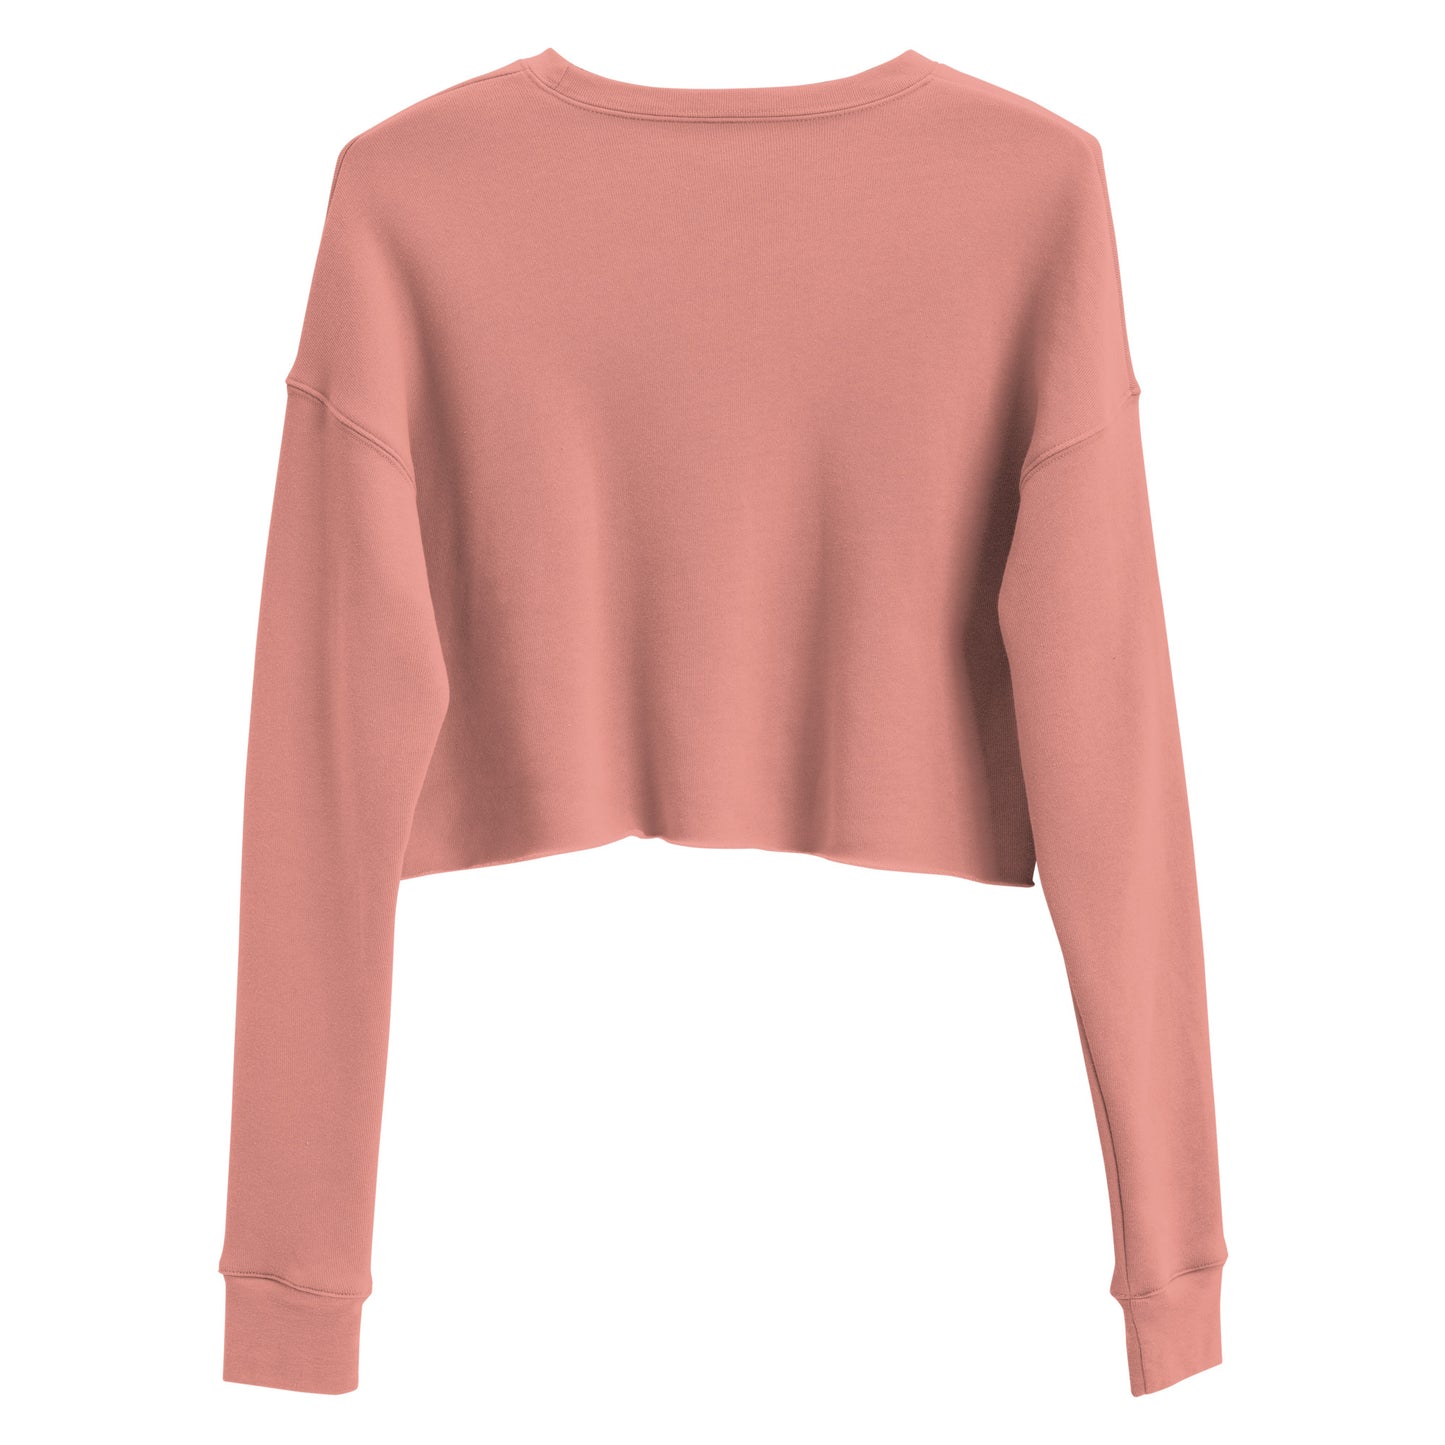 "Slay" women's short crop sweatshirt